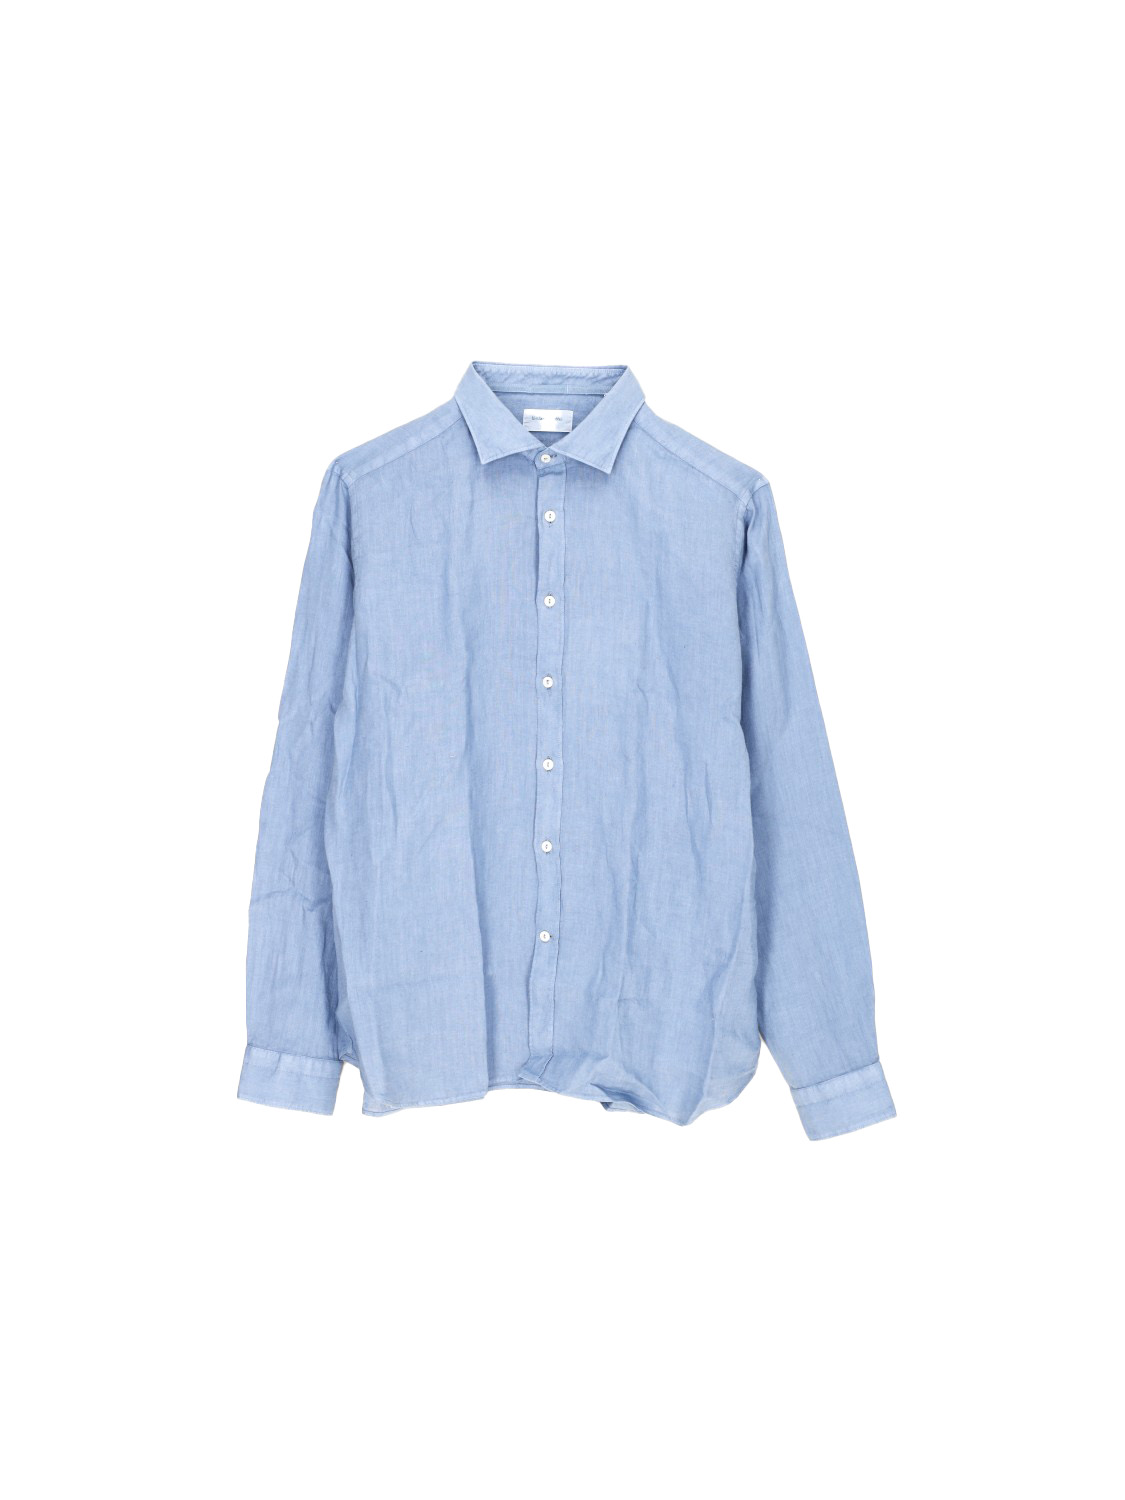 Tintoria Mattei 954 Linen shirt  blue M